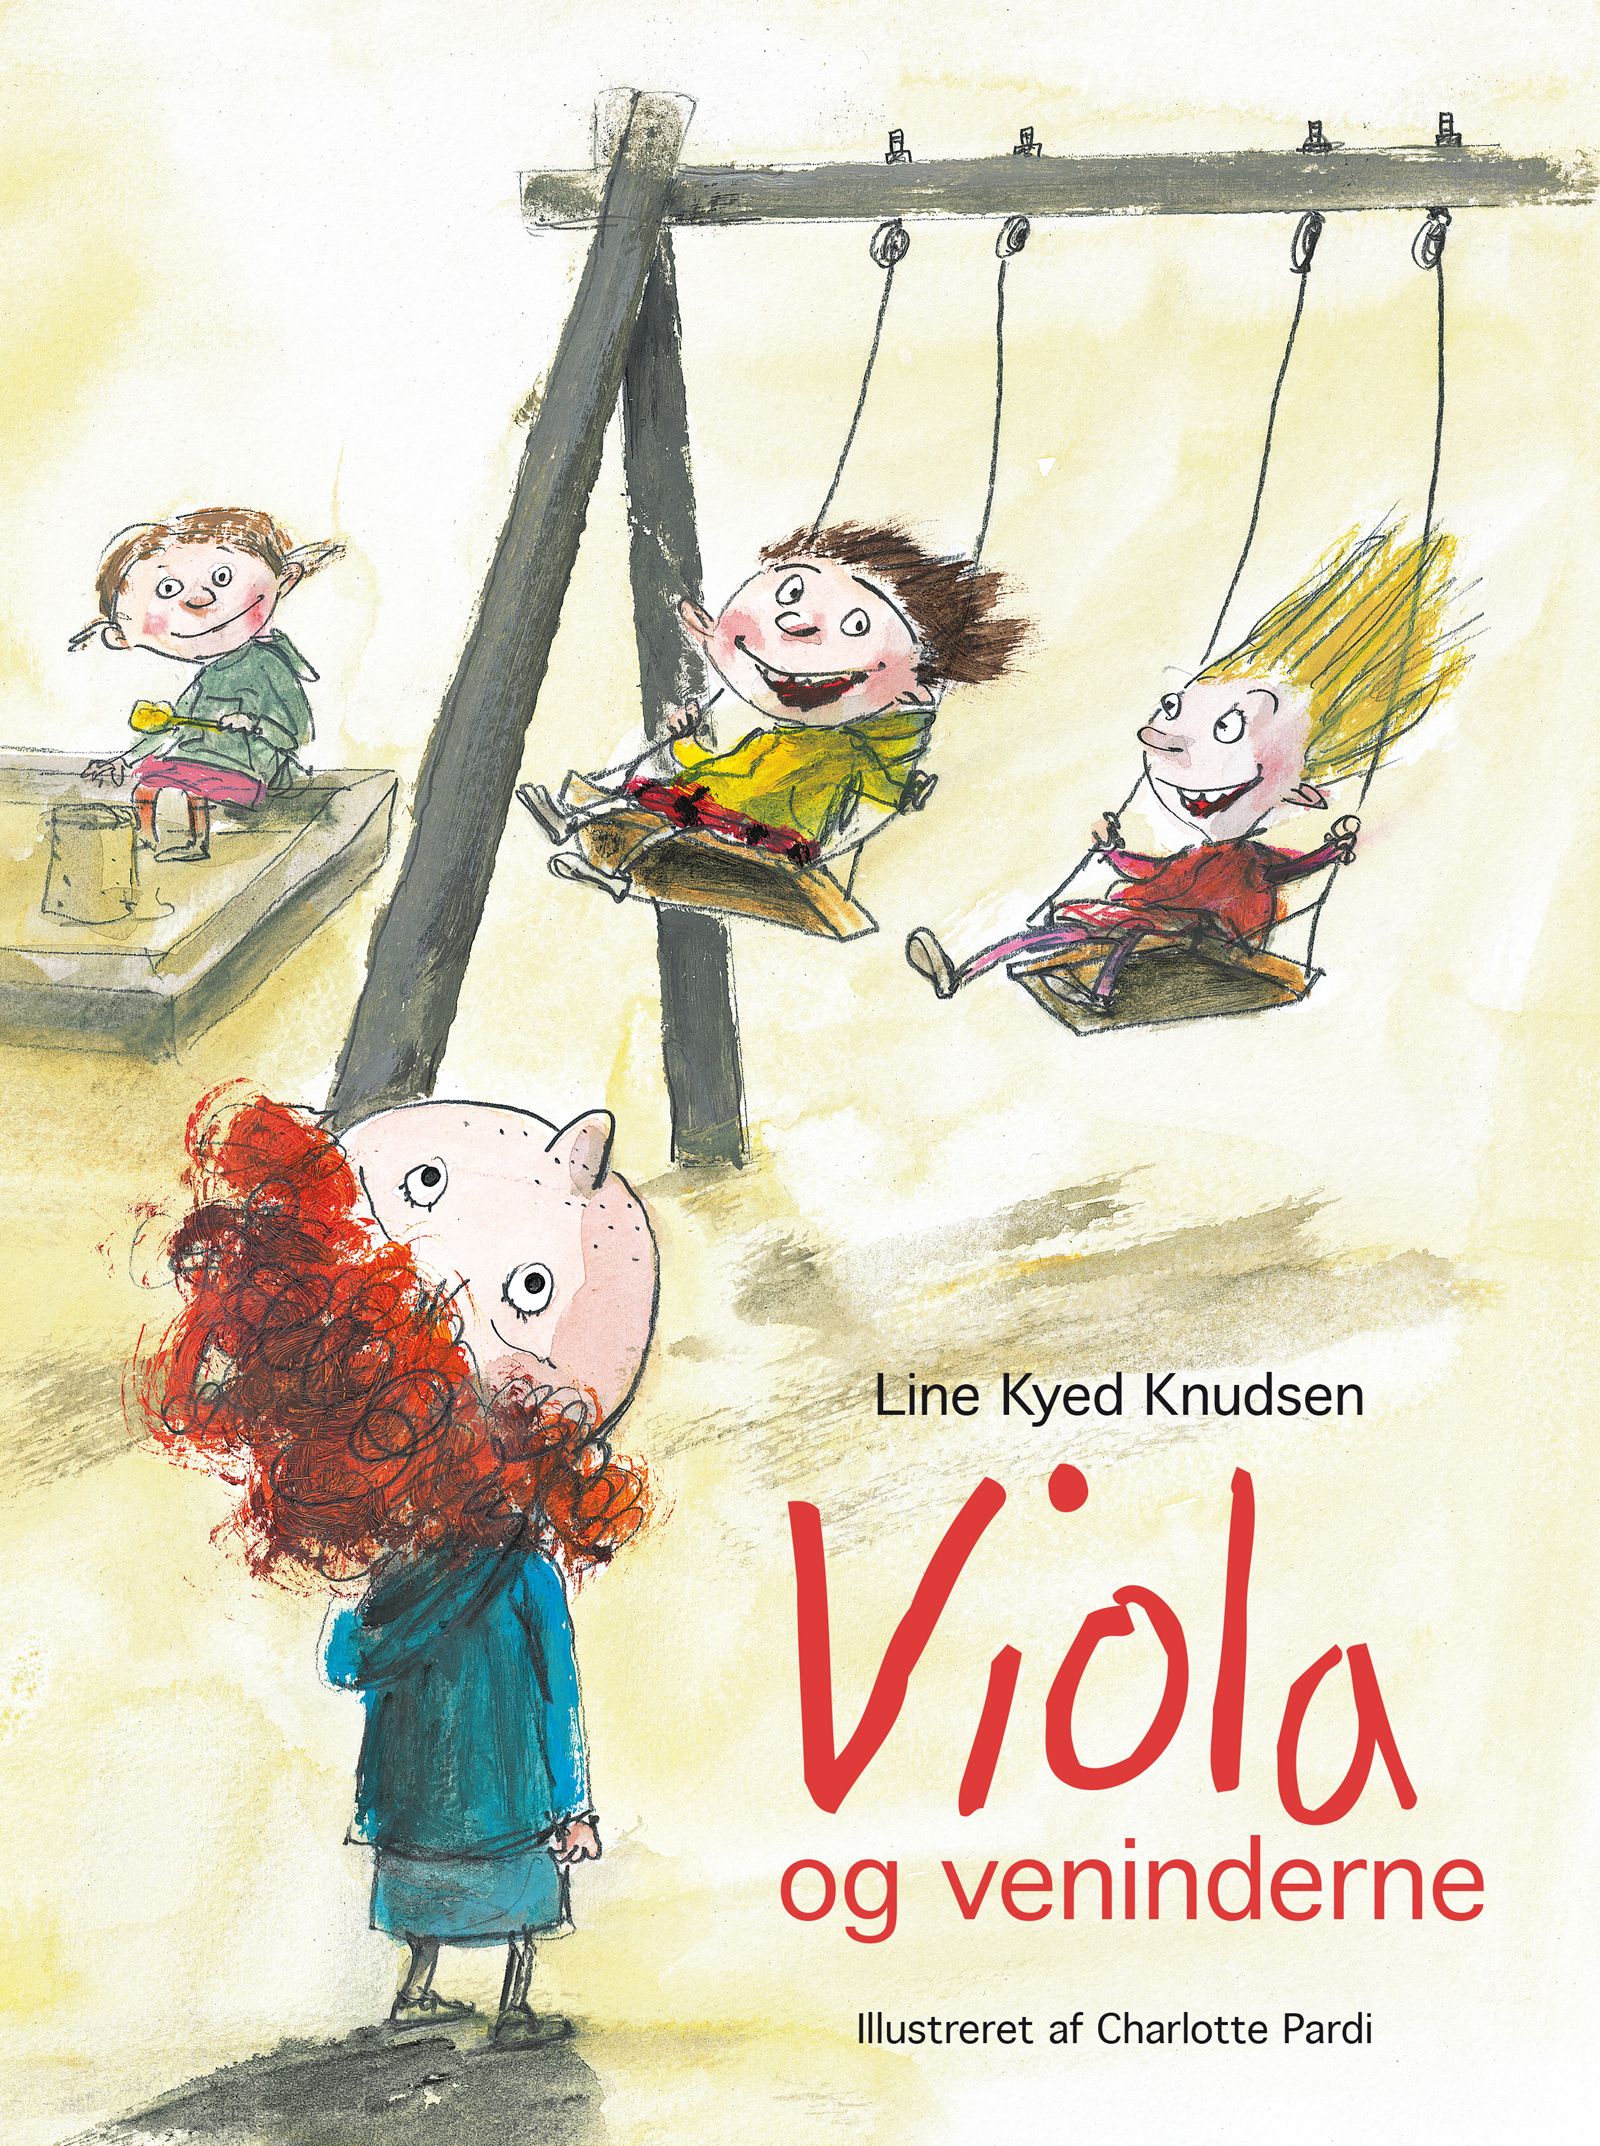 Viola og veninderne, eBook by Line Kyed Knudsen